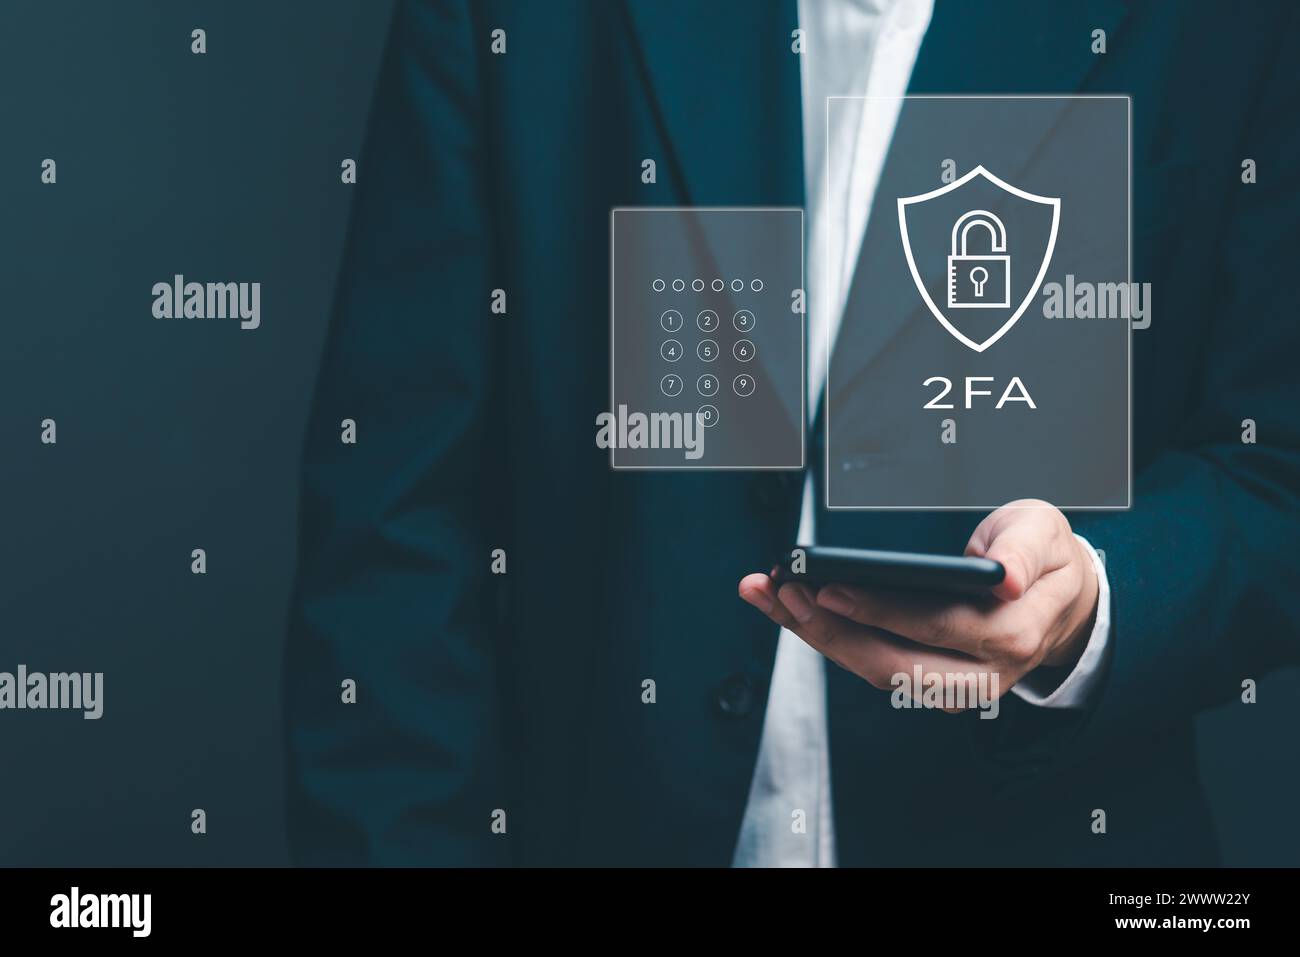 Amélioration de la cybersécurité avec l'authentification à deux facteurs 2FA, la sécurité de connexion, la protection de l'ID utilisateur et le cryptage pour contrecarrer les cyber-pirates. Homme d'affaires ho Banque D'Images